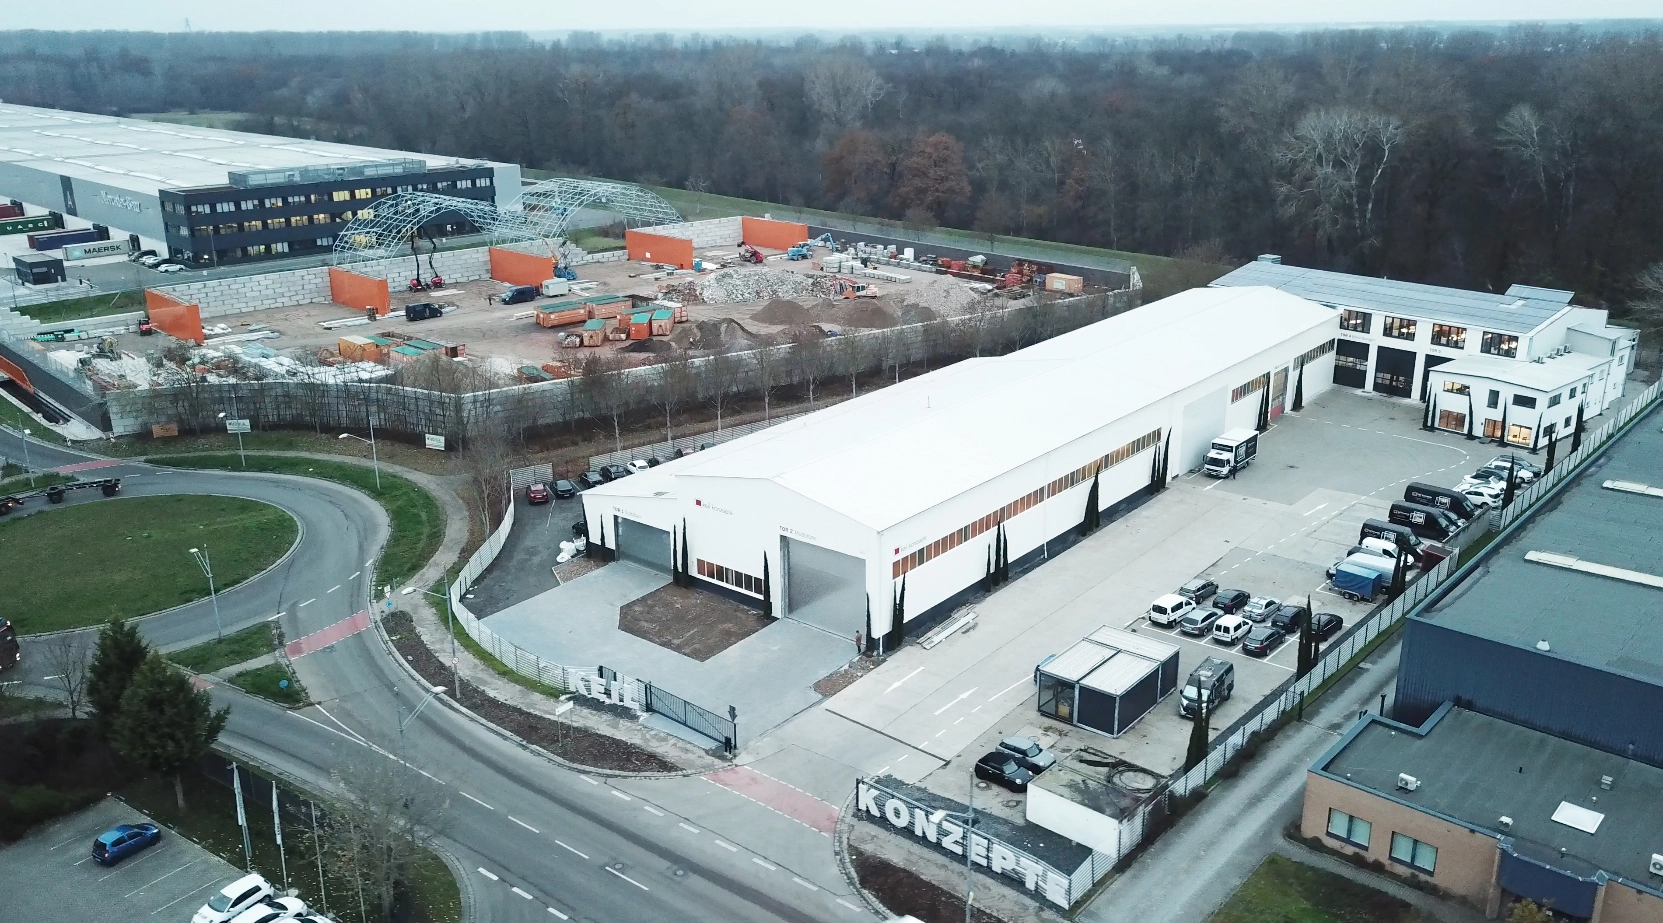 Nach einem Jahr Umbau zieht das ganze Unternehmen von Ludwigshafen Rheingönhein nach Speyer in den neuen Firmensitz. Hier stehen 10.000 qm Fläche, über 6000 qm Hallenfläche und 1500 qm Büro und Besprechungsräume zur Verfügung